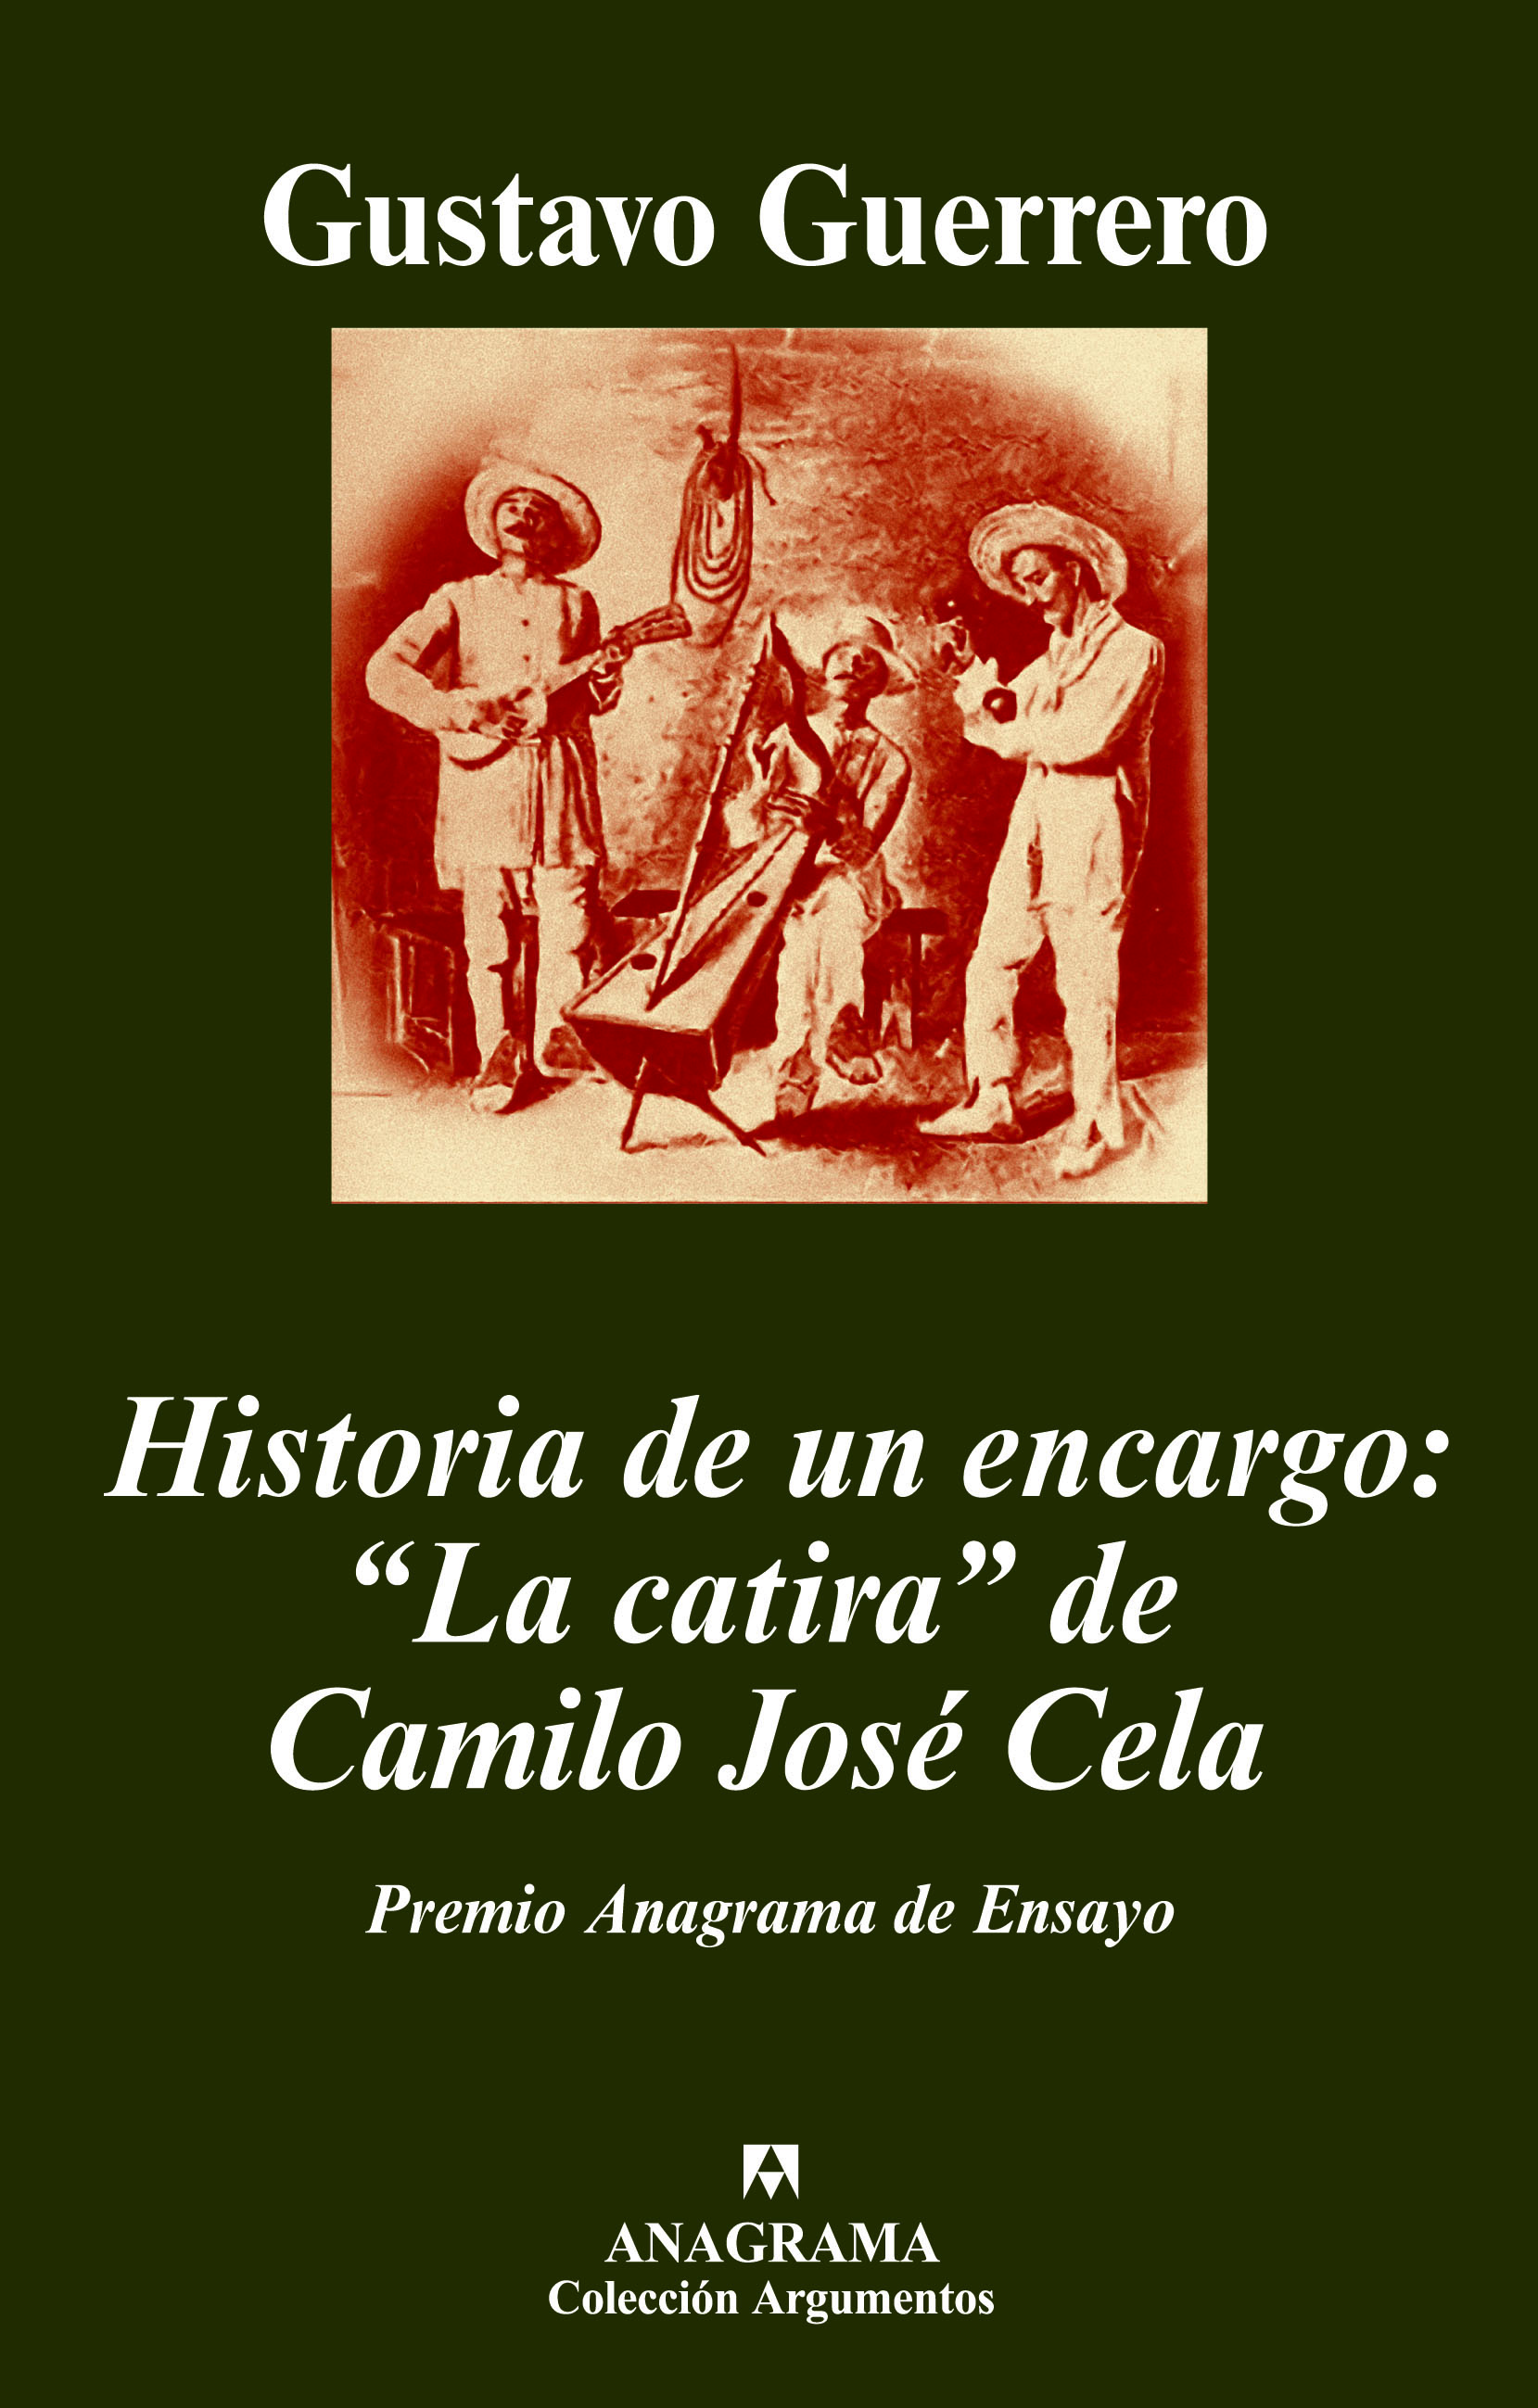 Historia de encargo: "La de Camilo José Cela - Guerrero, Gustavo - 978-84-339-6274-4 - Editorial